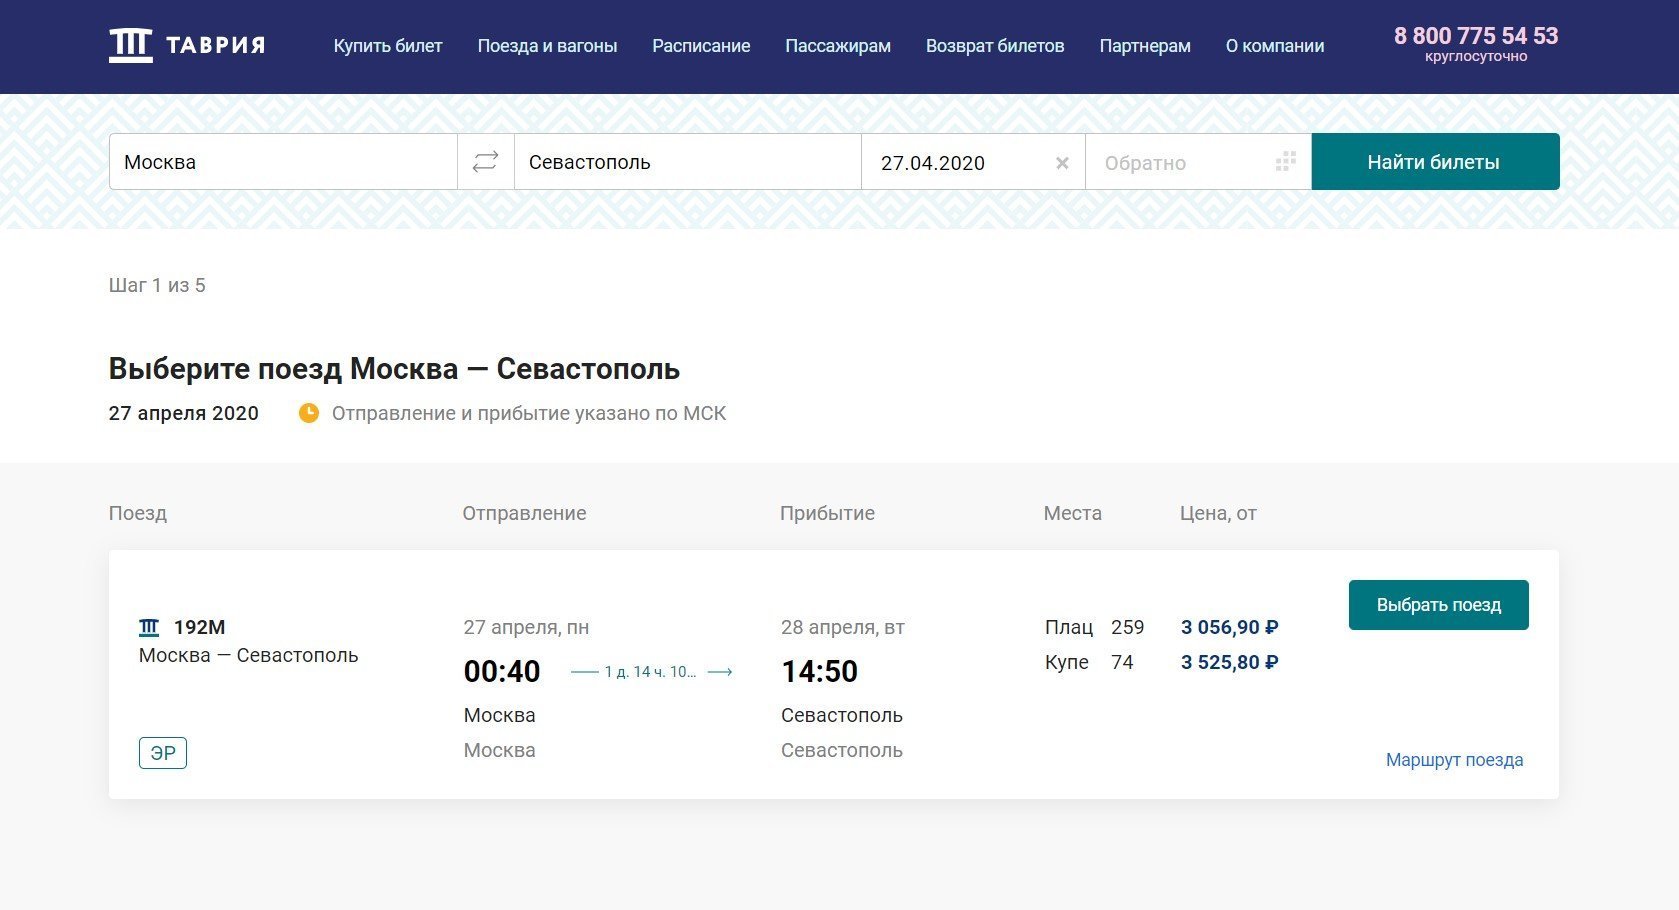 Продажа билетов на поезд Москва - Севастополь